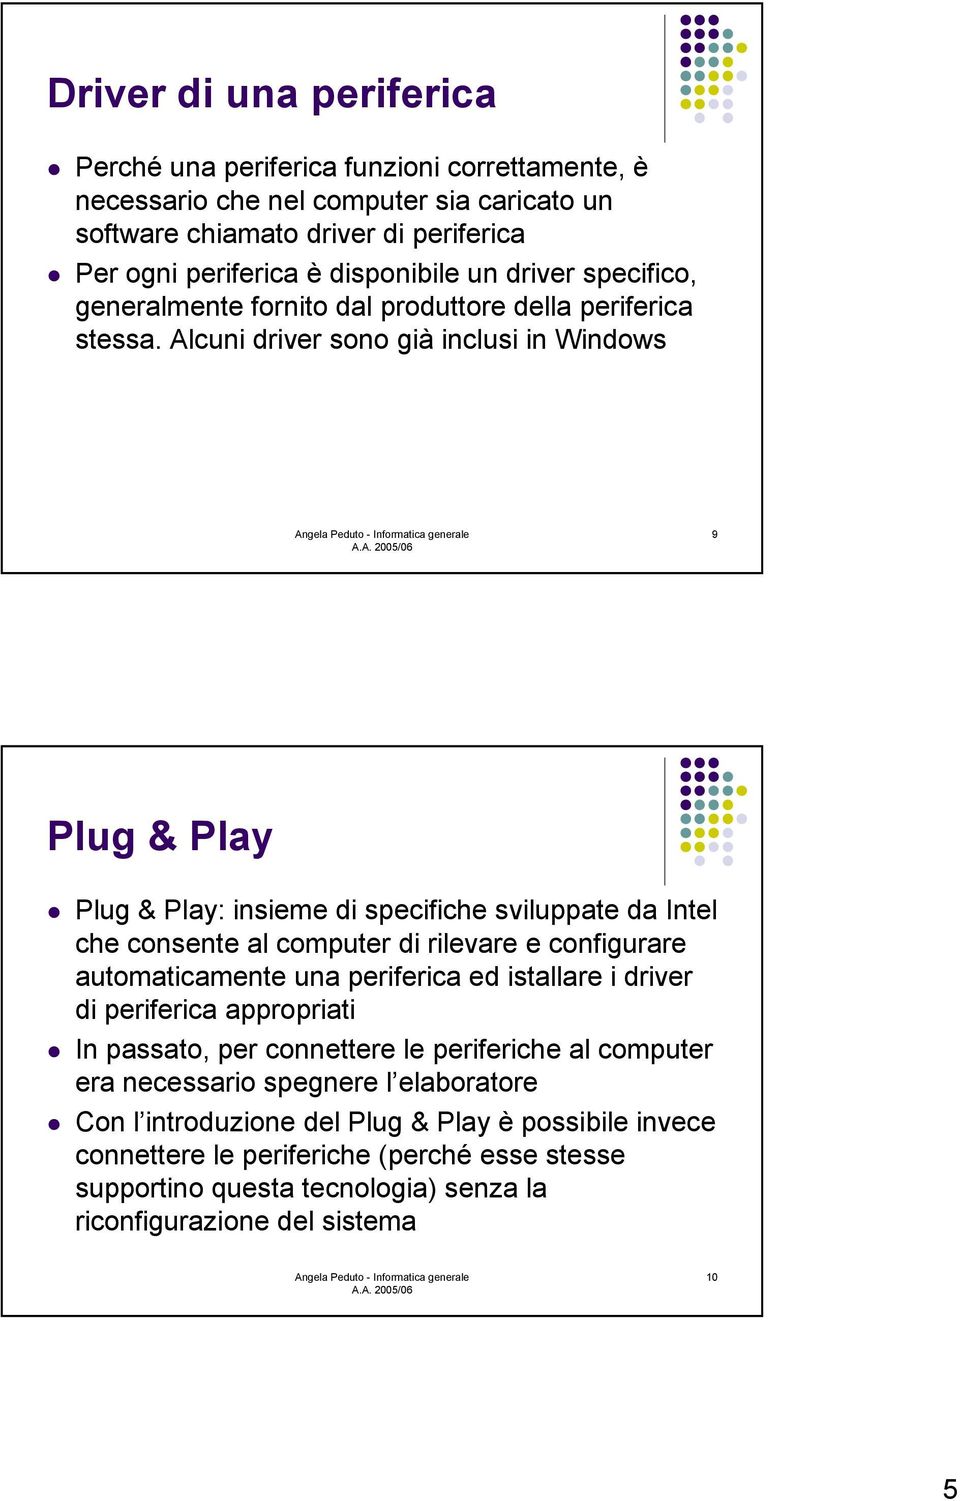 Plug & Play: insieme di specifiche sviluppate da Intel che consente al computer di rilevare e configurare automaticamente una periferica ed istallare i driver di periferica appropriati!